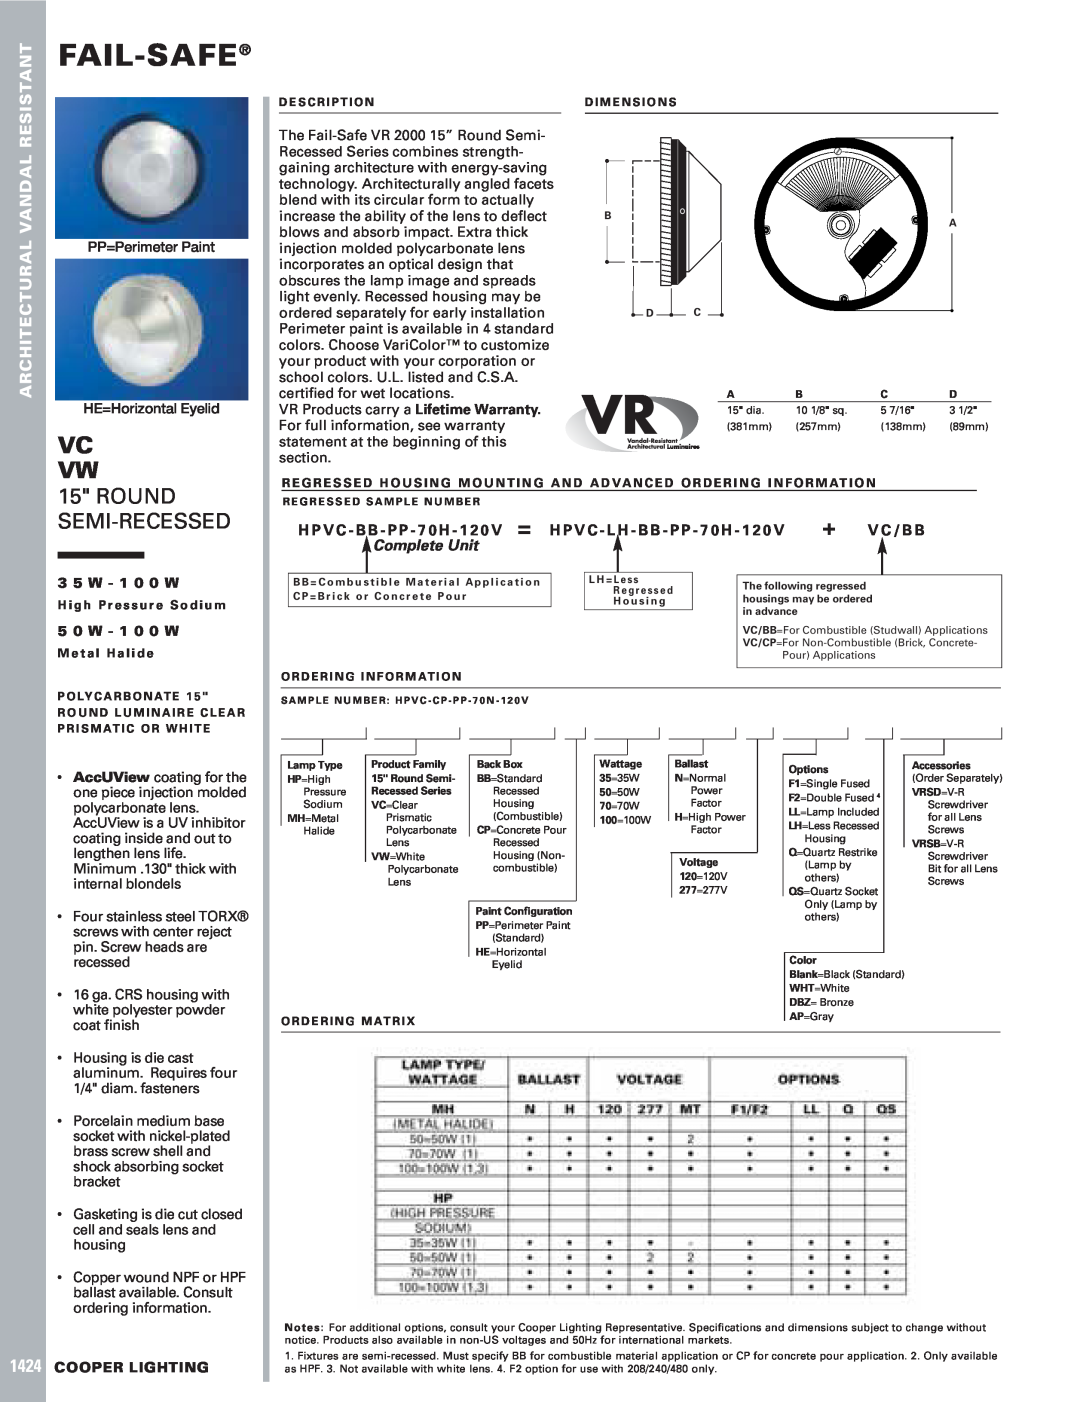 Cooper Lighting VC, VW dimensions Fail-Safe, Vc Vw, Resistant, Vandal, Architectural, PP=Perimeter Paint, 3 5 W - 1 0 0 W 